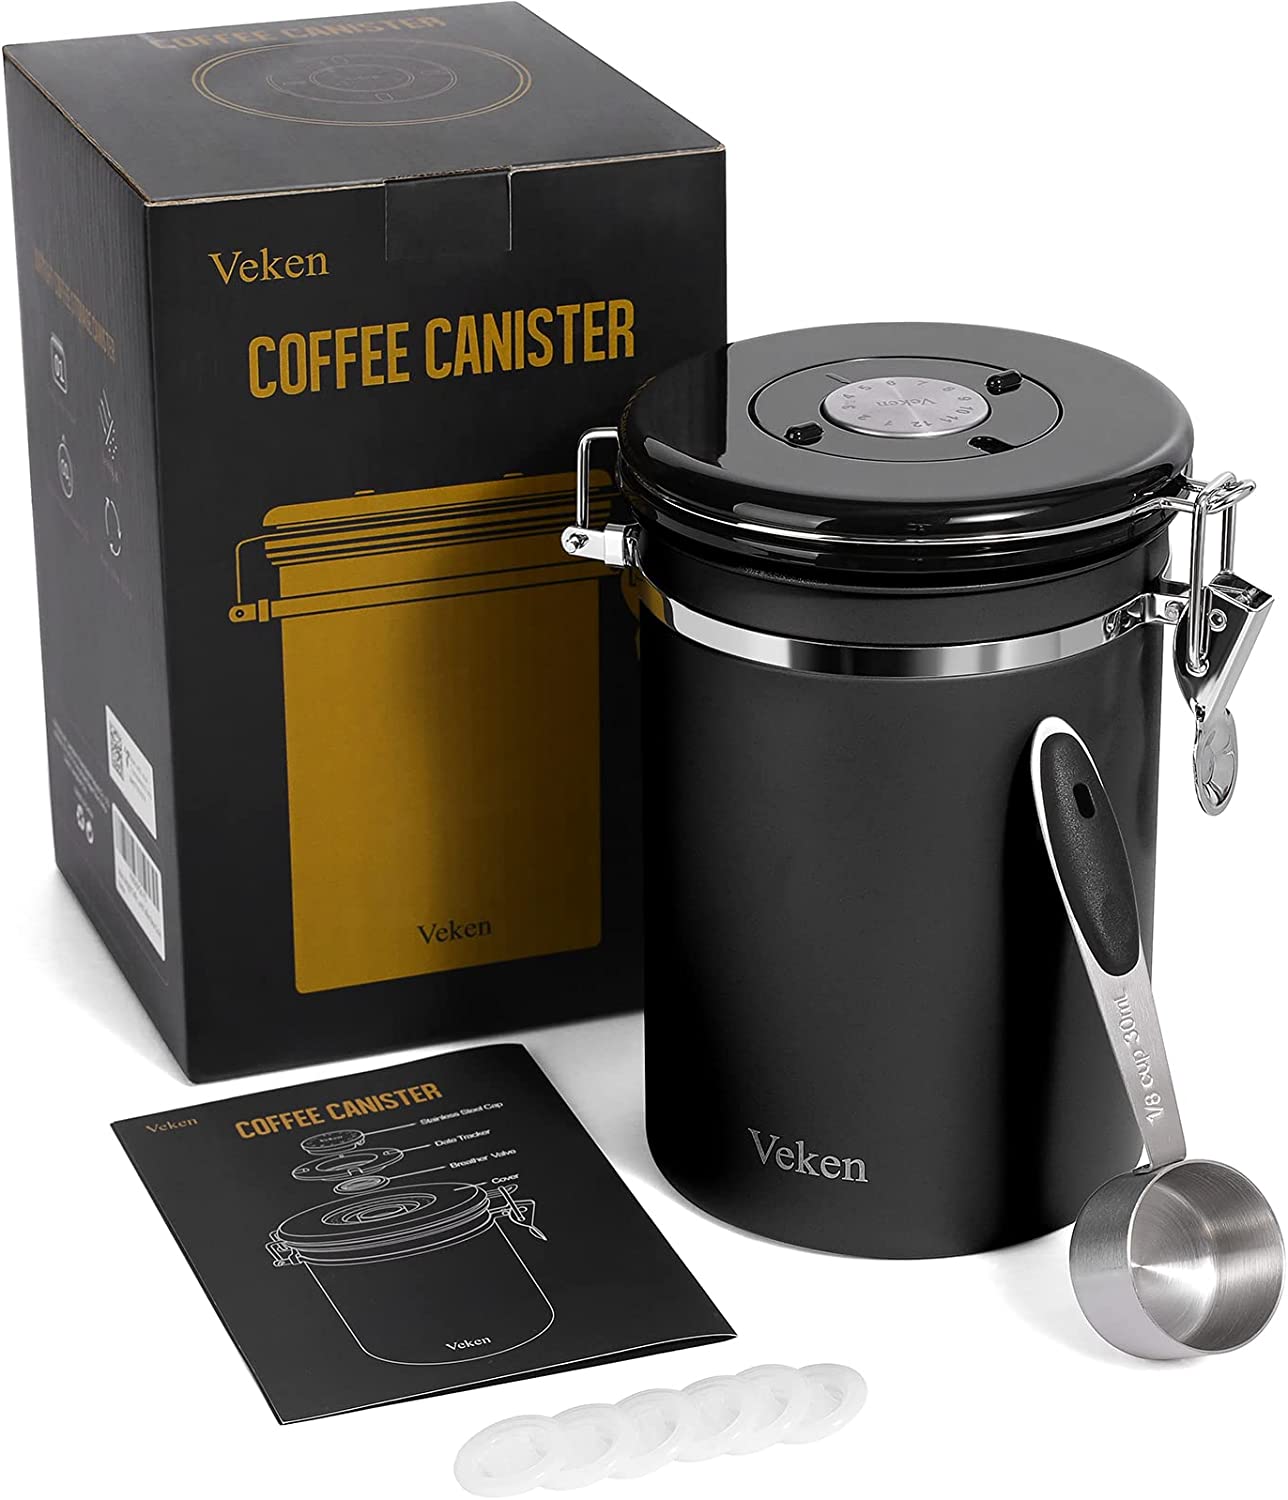 Veken Coffee Canister, Stainless Steel, 22OZ, Gray, Veken